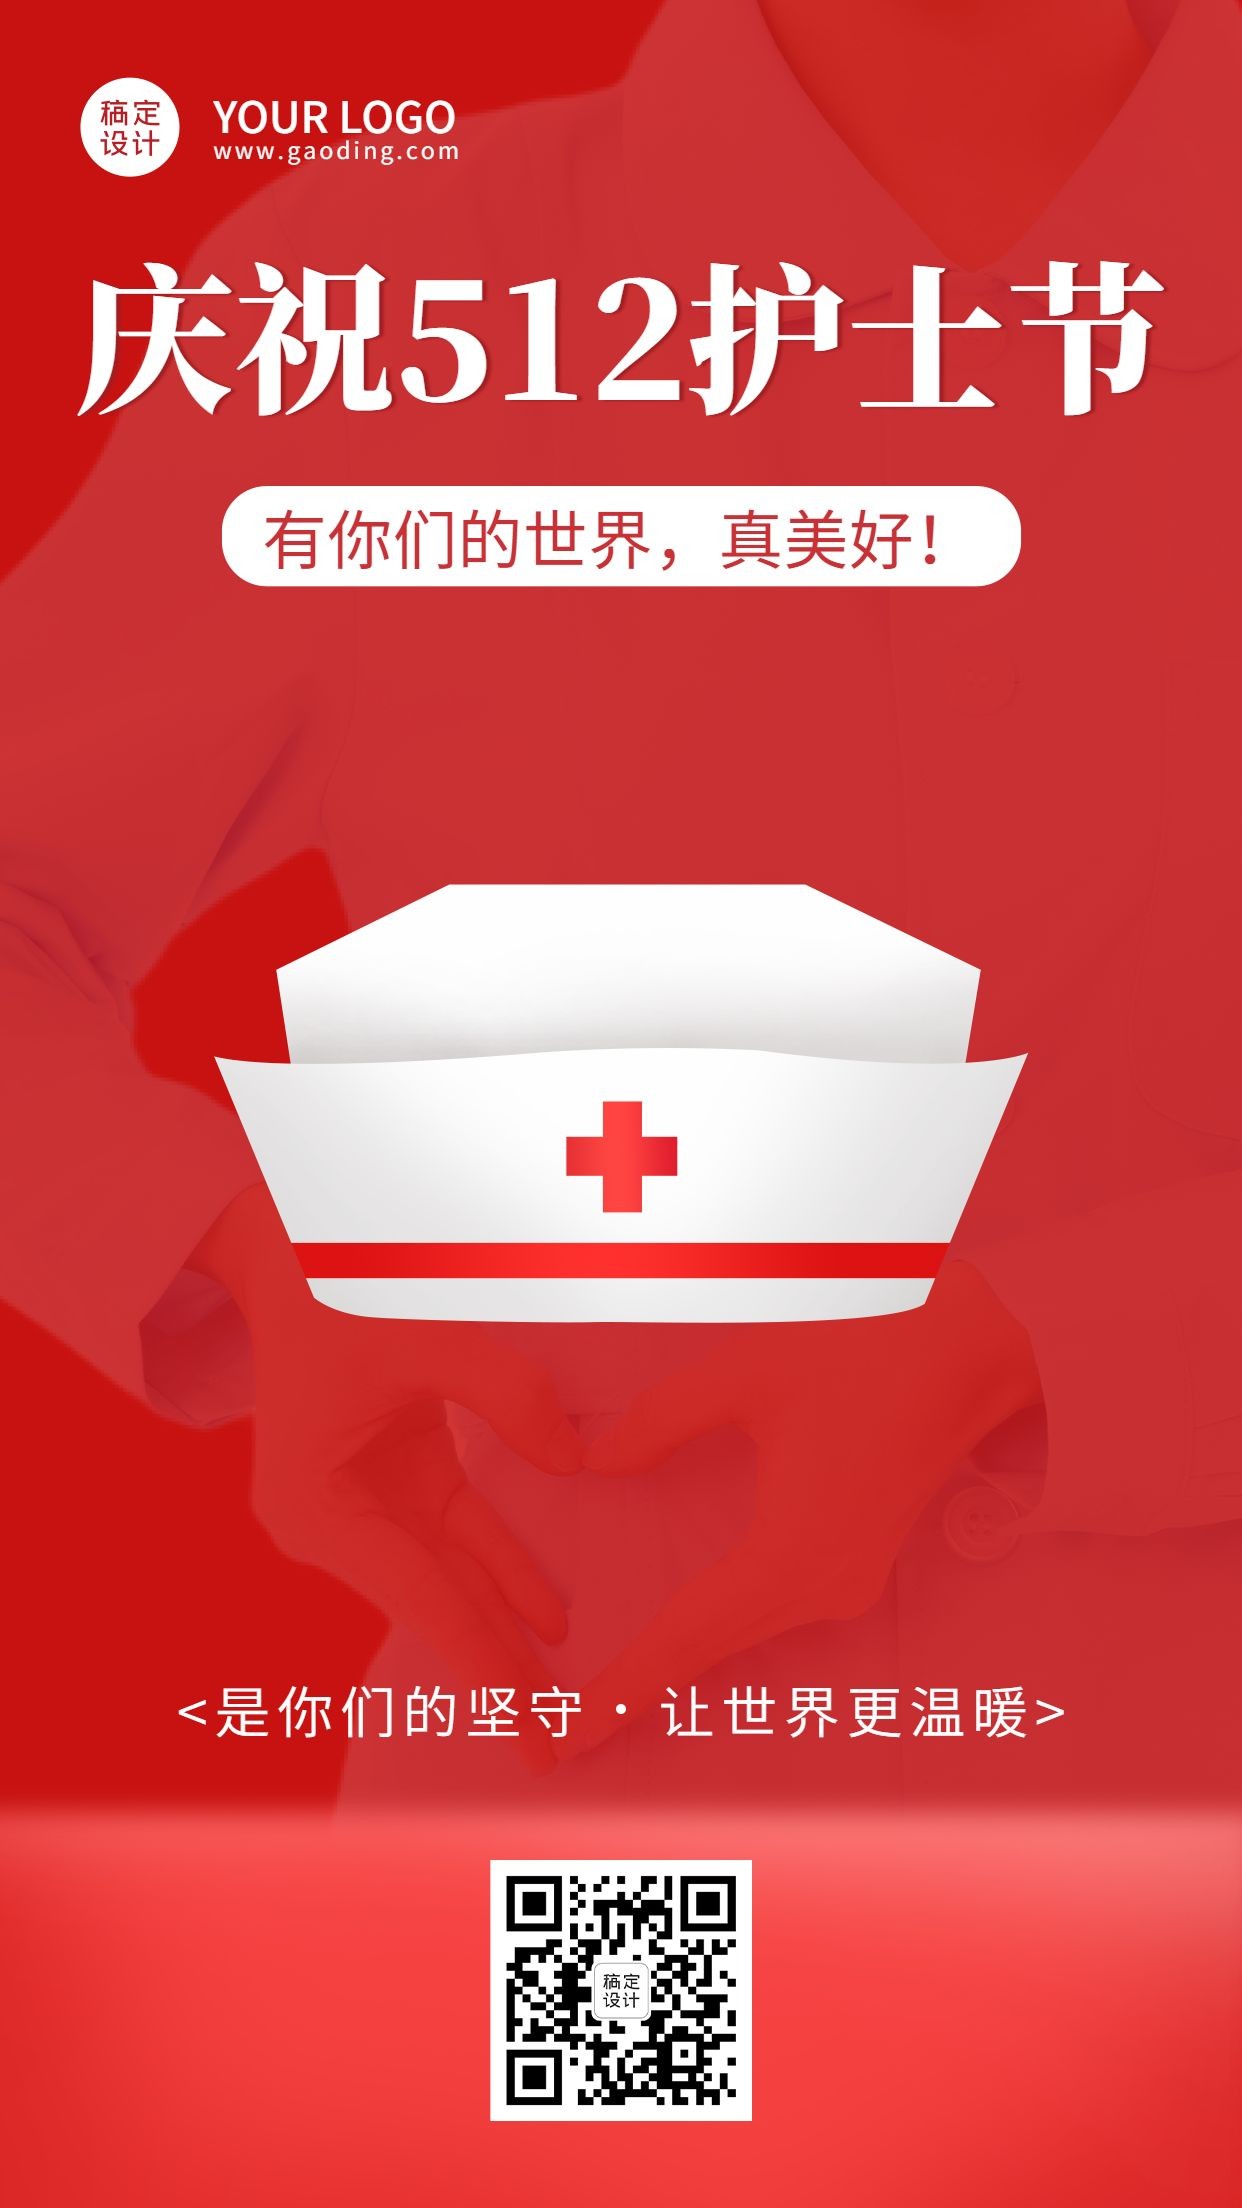 国际护士节节日宣传手机海报